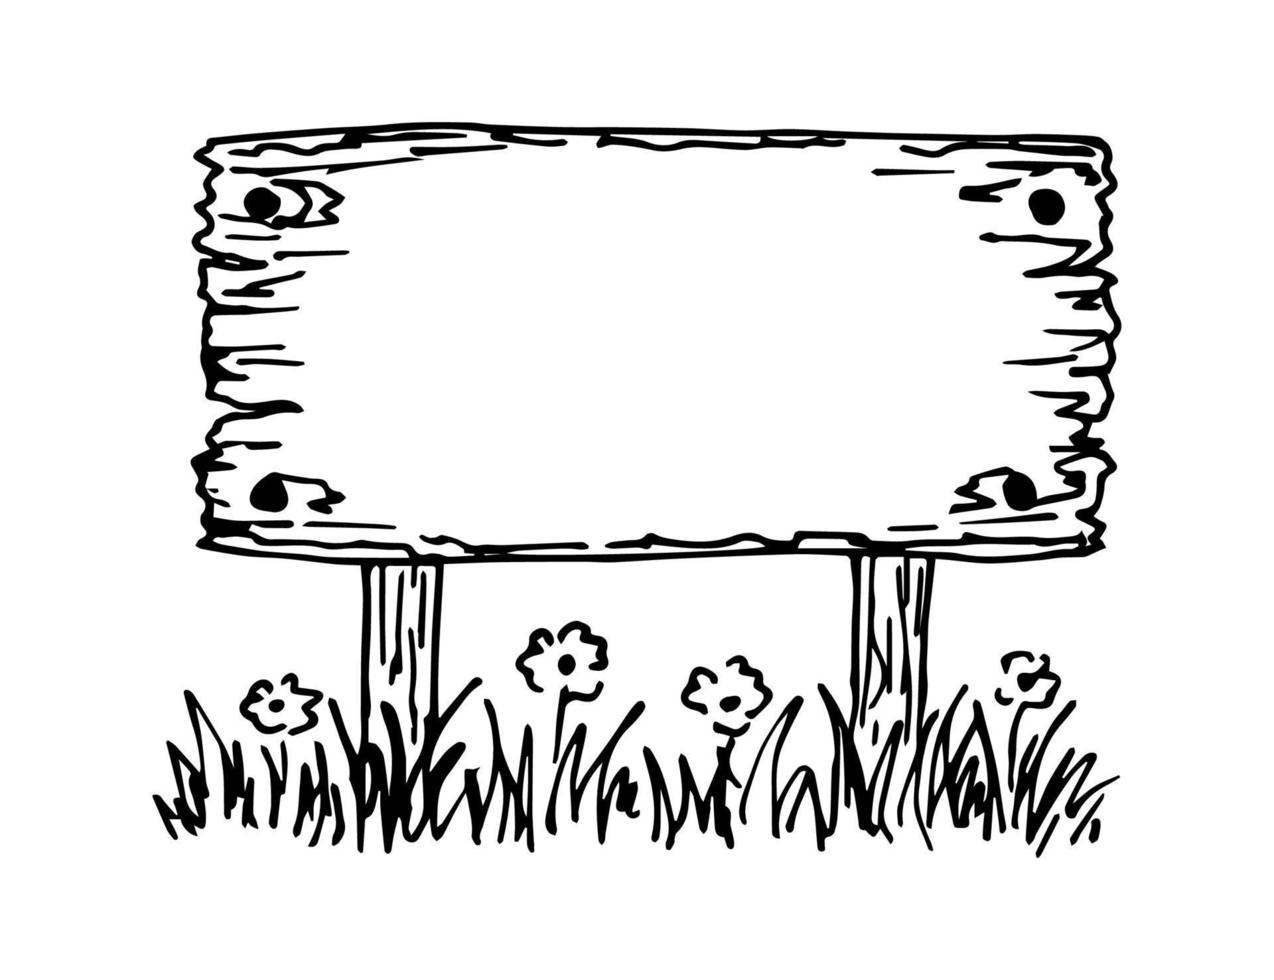 dessin noir et blanc vectoriel dessiné à la main dans le style de gravure. vieille enseigne en bois dans l'herbe et les fleurs. espace vide pour le titre au centre.